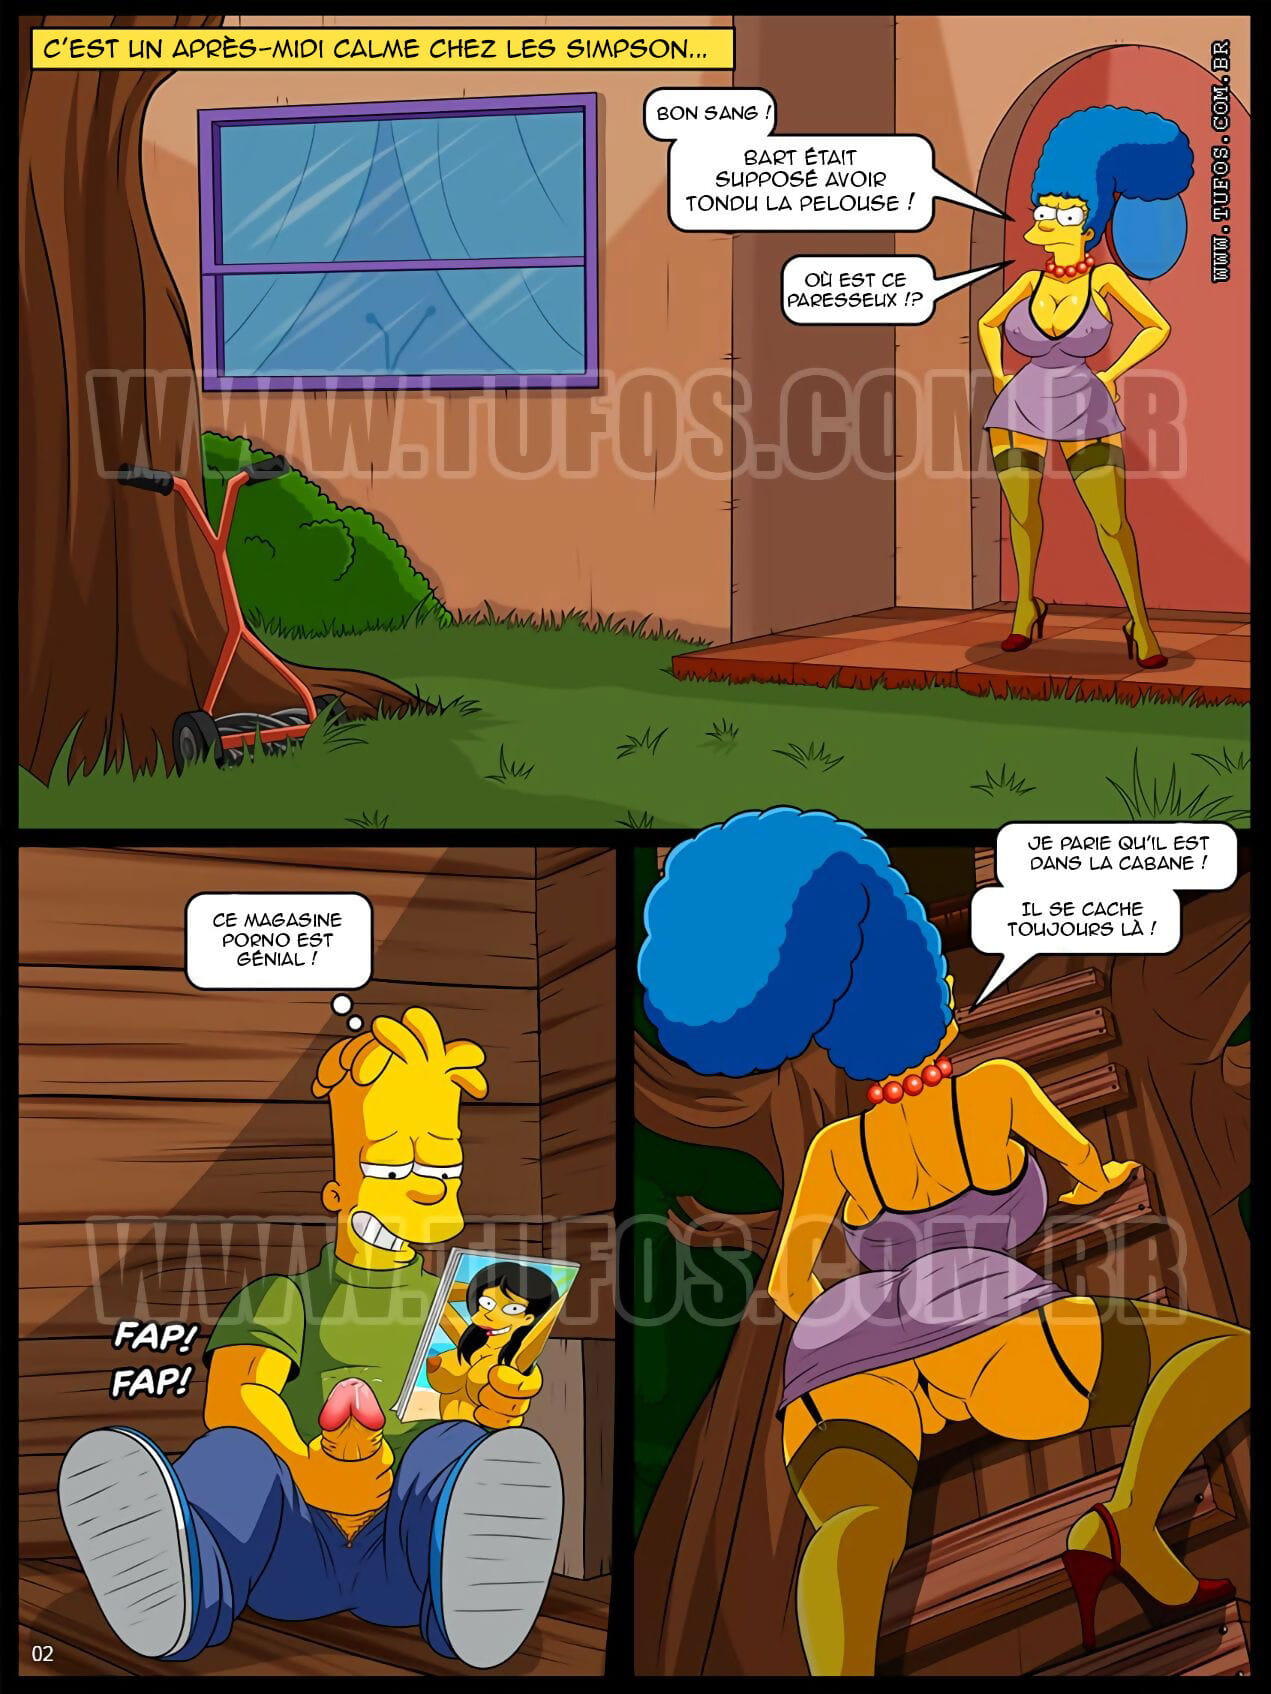 The Simpsons 12 - Grimpée dans la cabane - page 1